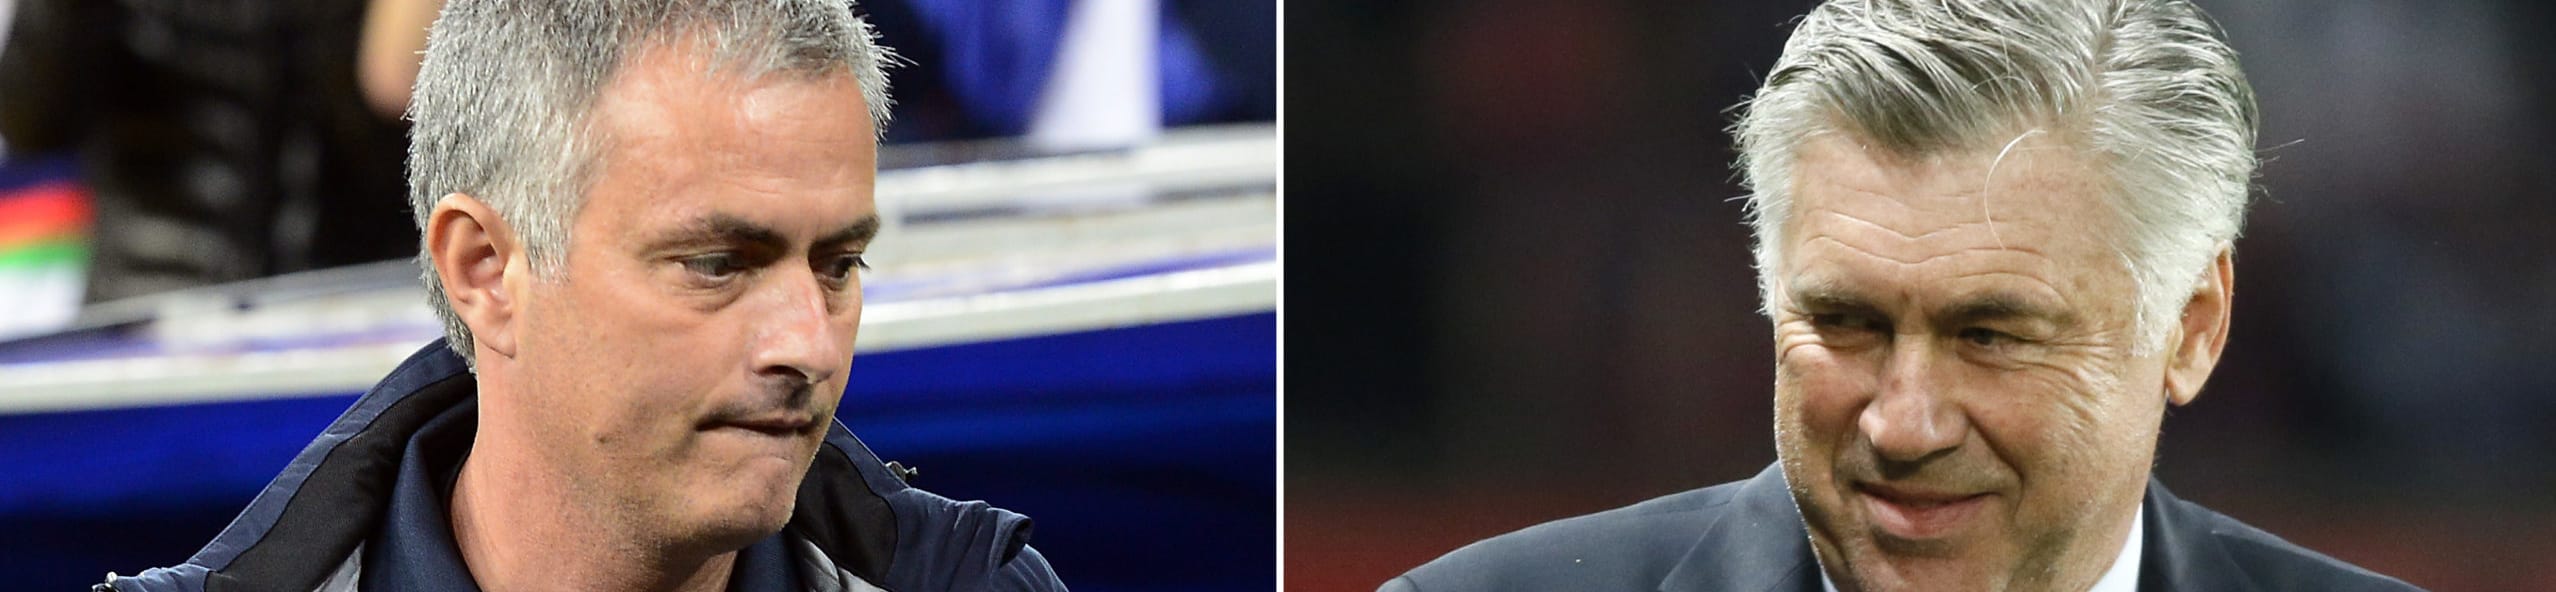 Scommesse sportive, il palinsesto bwin del 6/7/2020: Mourinho contro Ancelotti